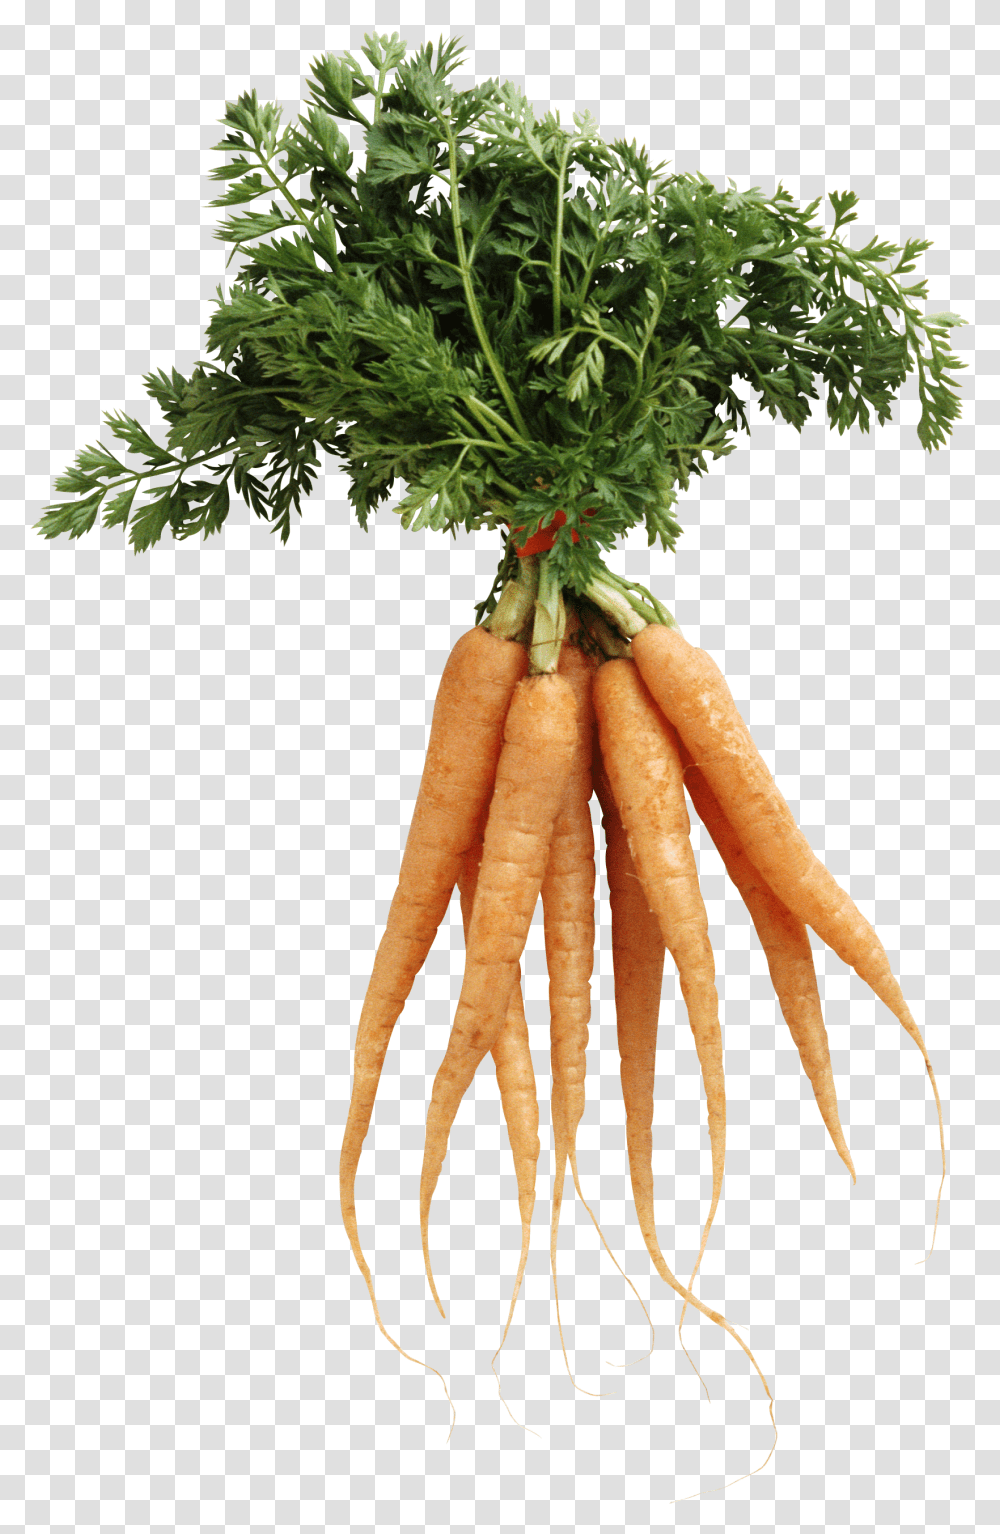 Carrot Image Background Carrots, Plant, Vegetable, Food, Lobster Transparent Png